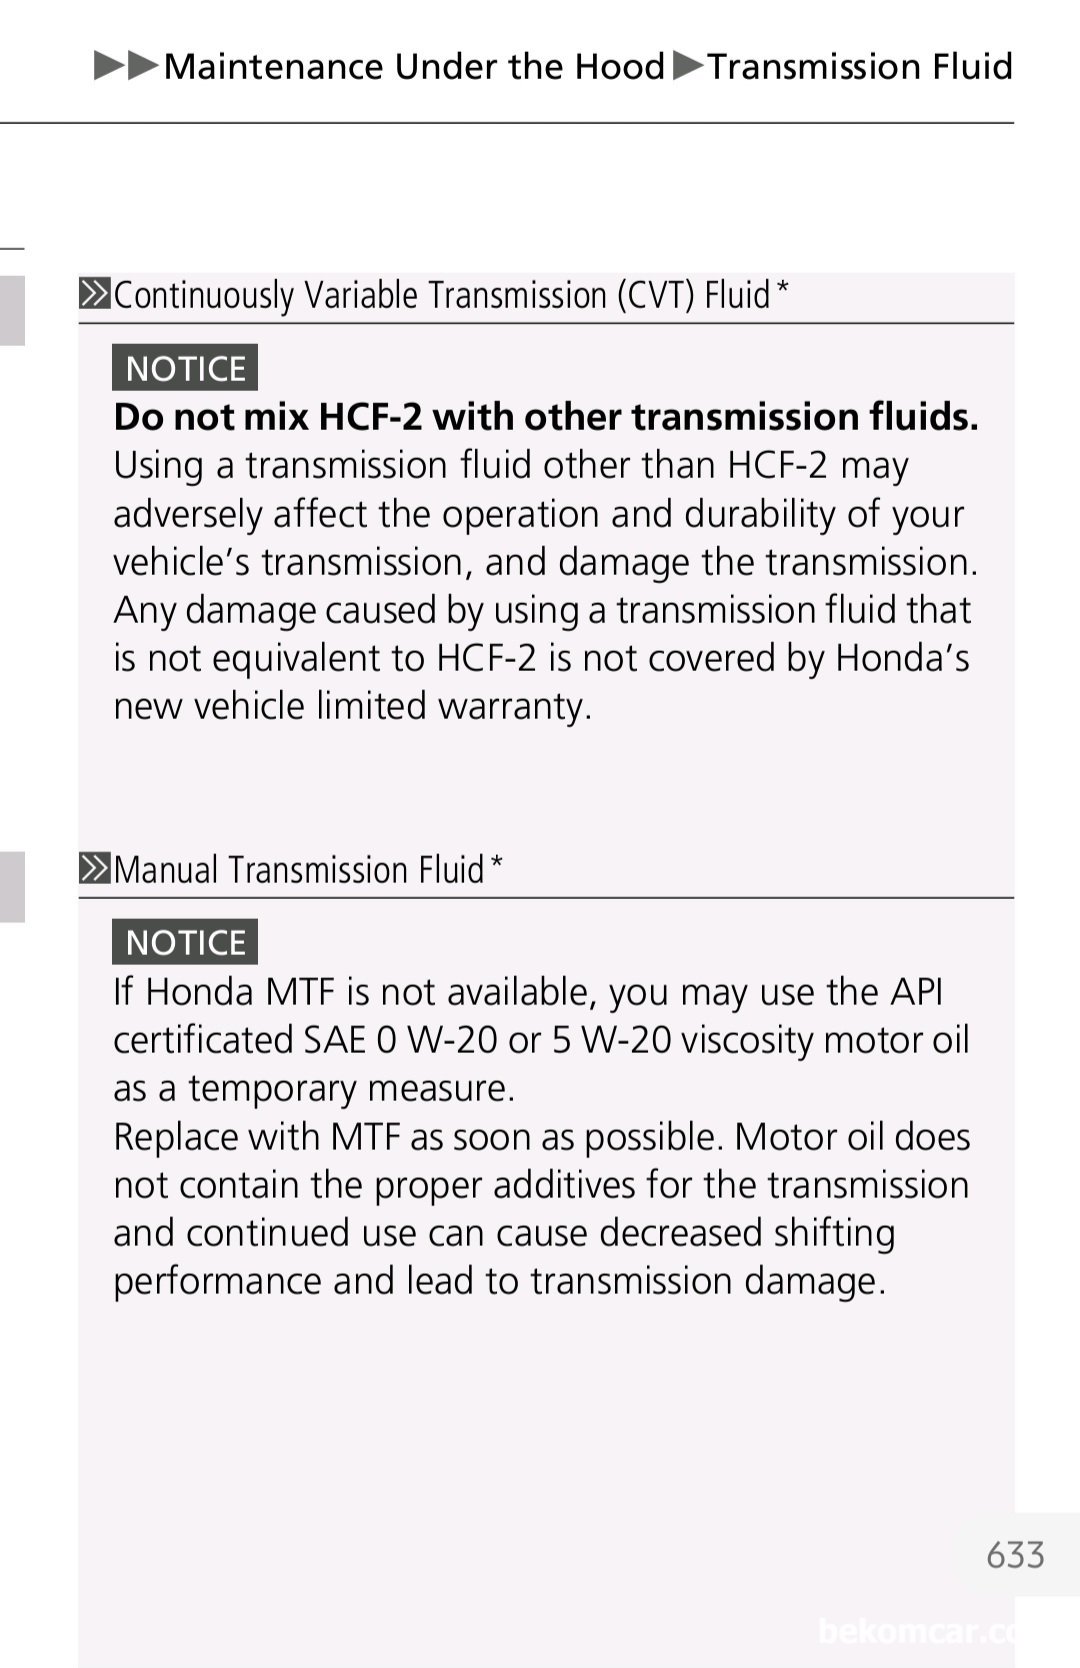 혼다 CVT미션액 교환시 주의점, 혼다 영문메뉴얼, 혼다 CVT미션액 교환시 주의점, 혼다 영문메뉴얼
Source: Page 632, 2020 Honda Accord Owner Manual|베콤카 (bekomcar.com)